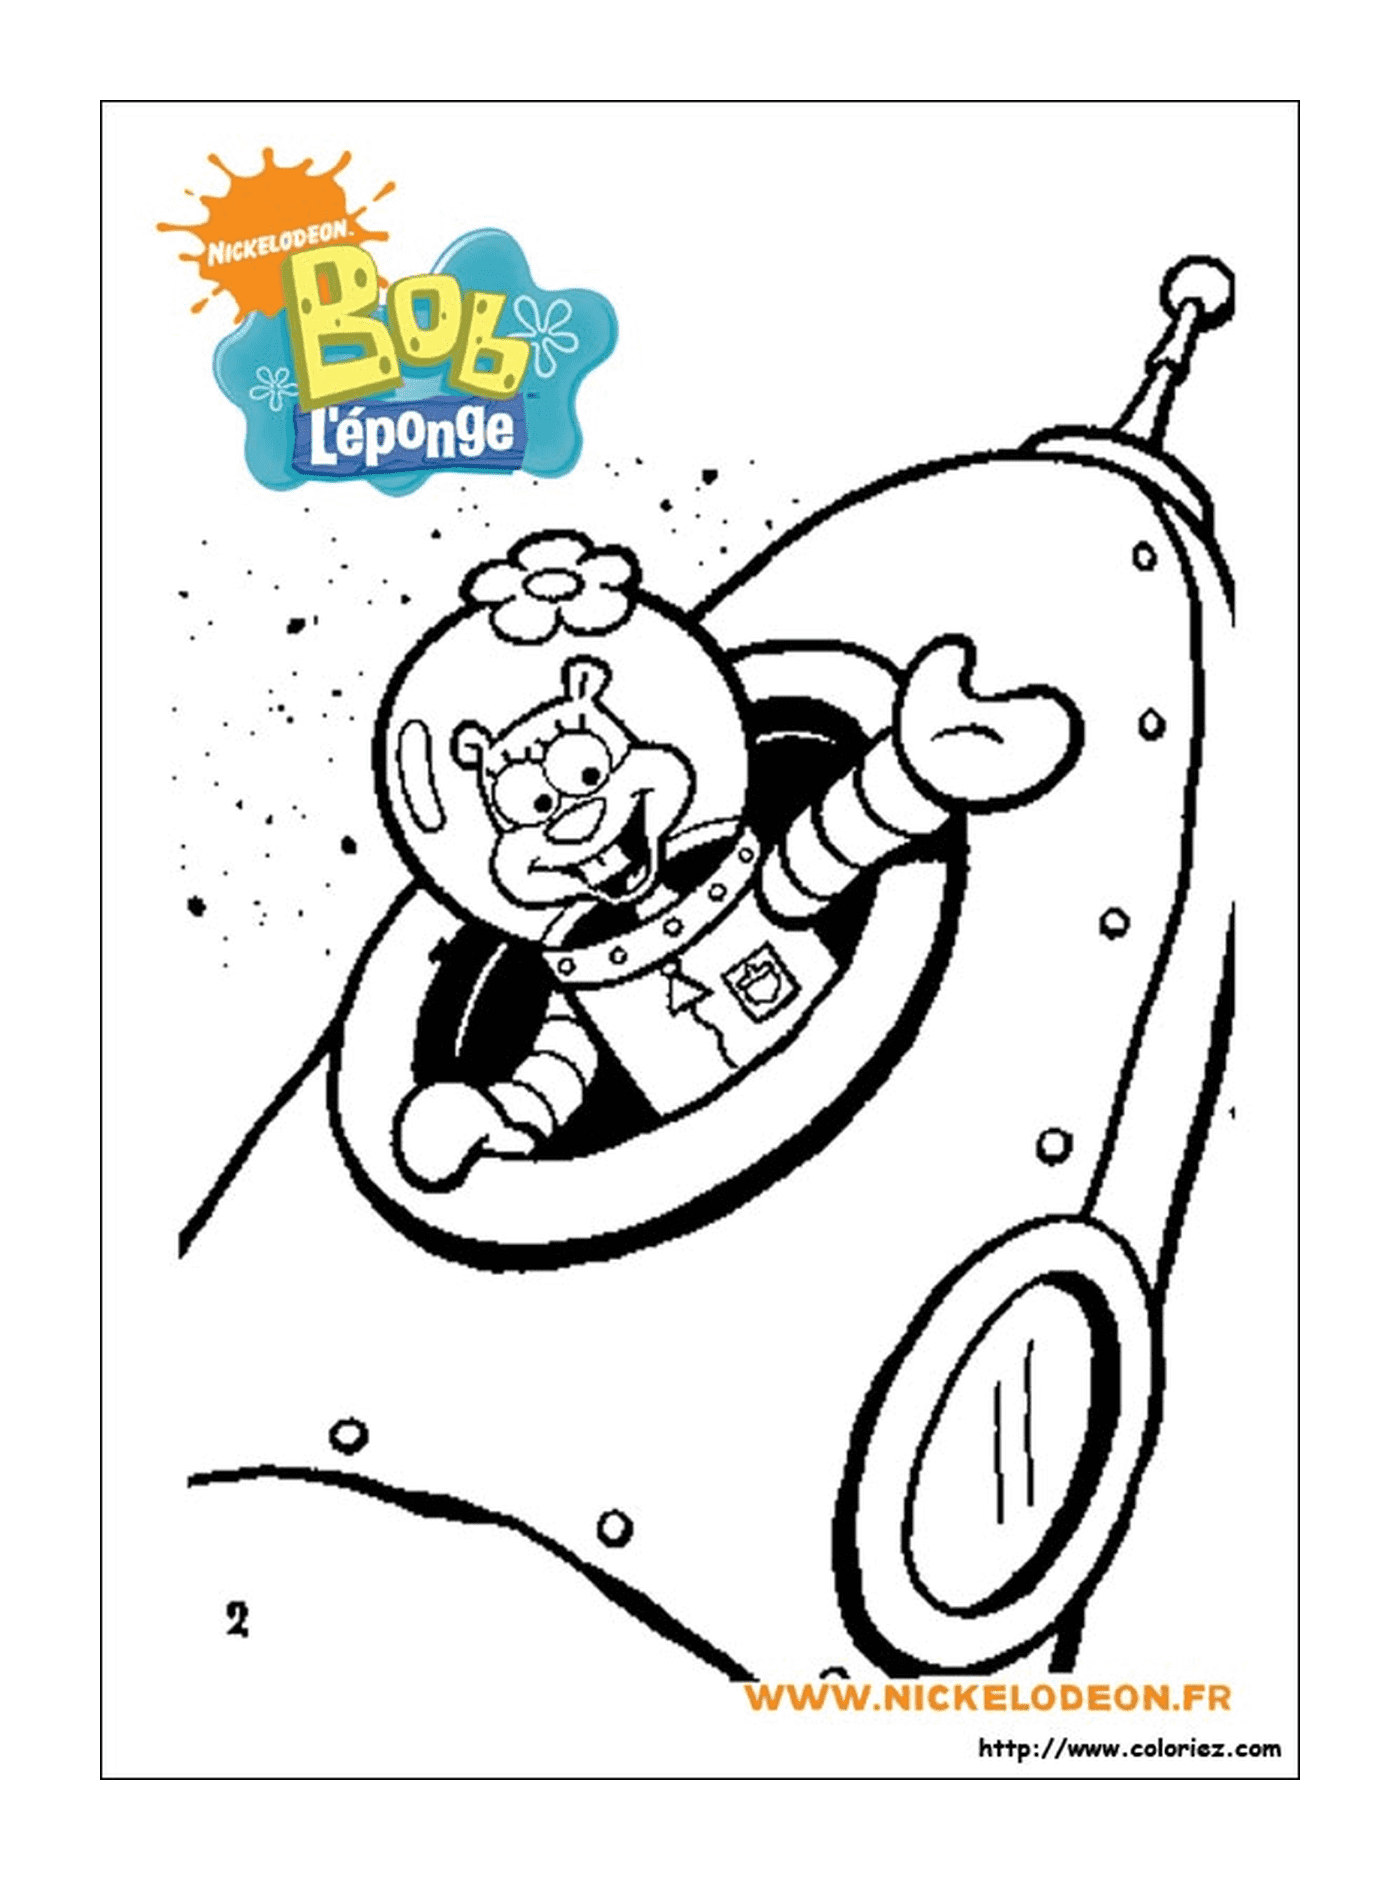  Spongebob, ein Zeichentrickfigur, als Astronaut gekleidet 